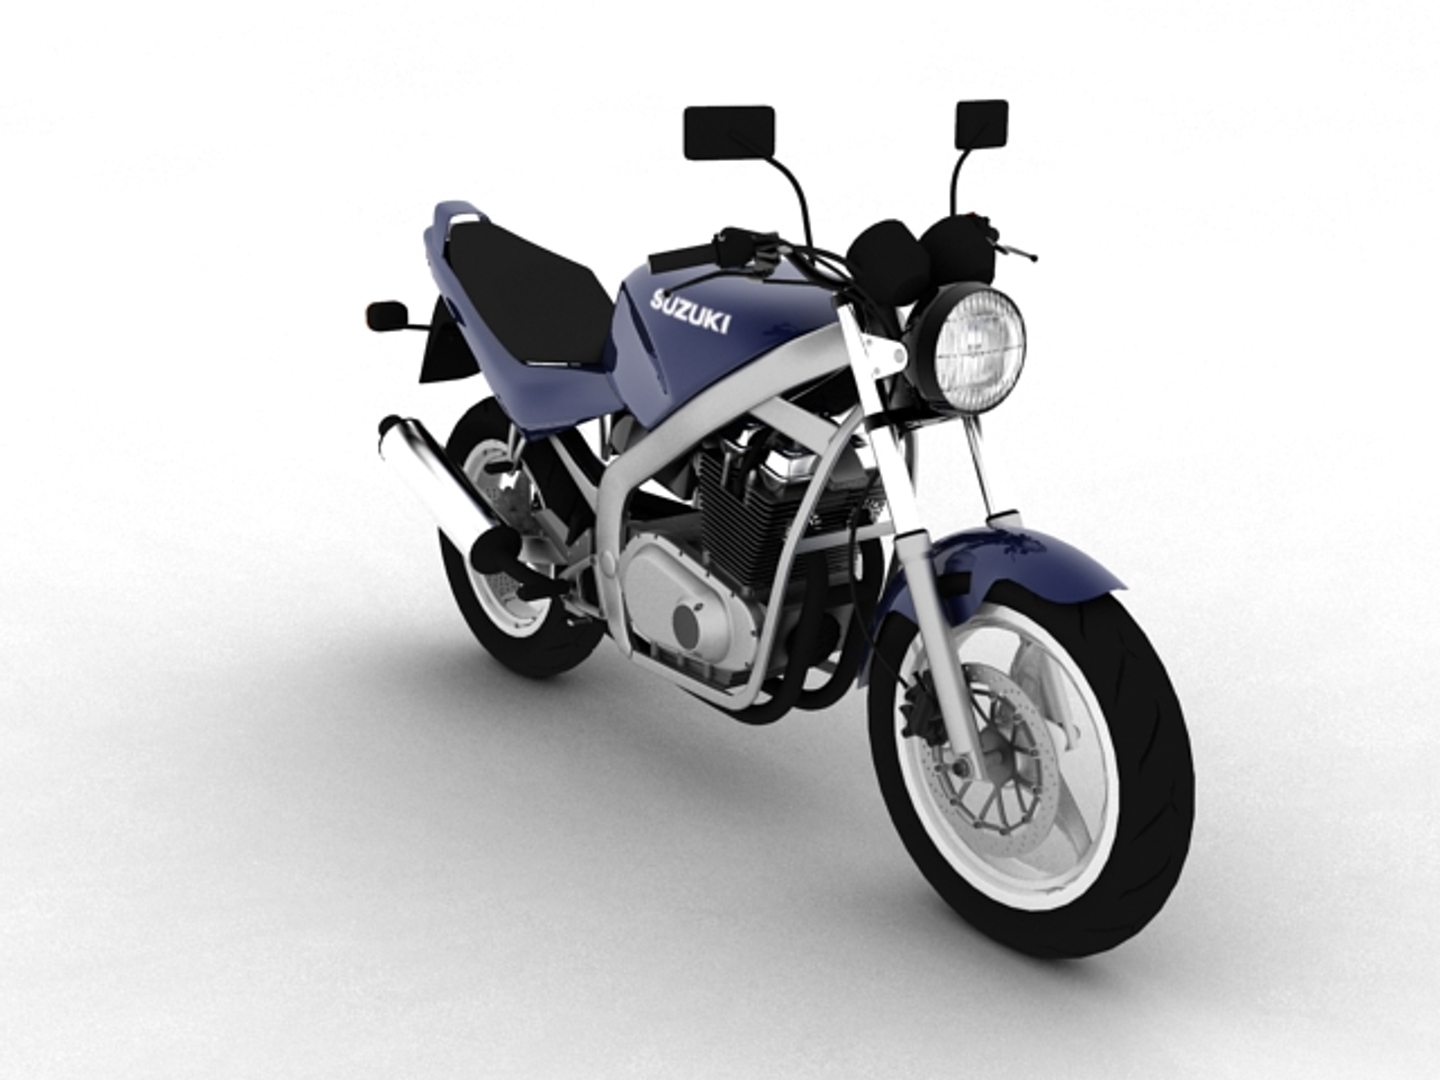 suzuki gs500 1994 3D Model in Motorcycle 3DExport